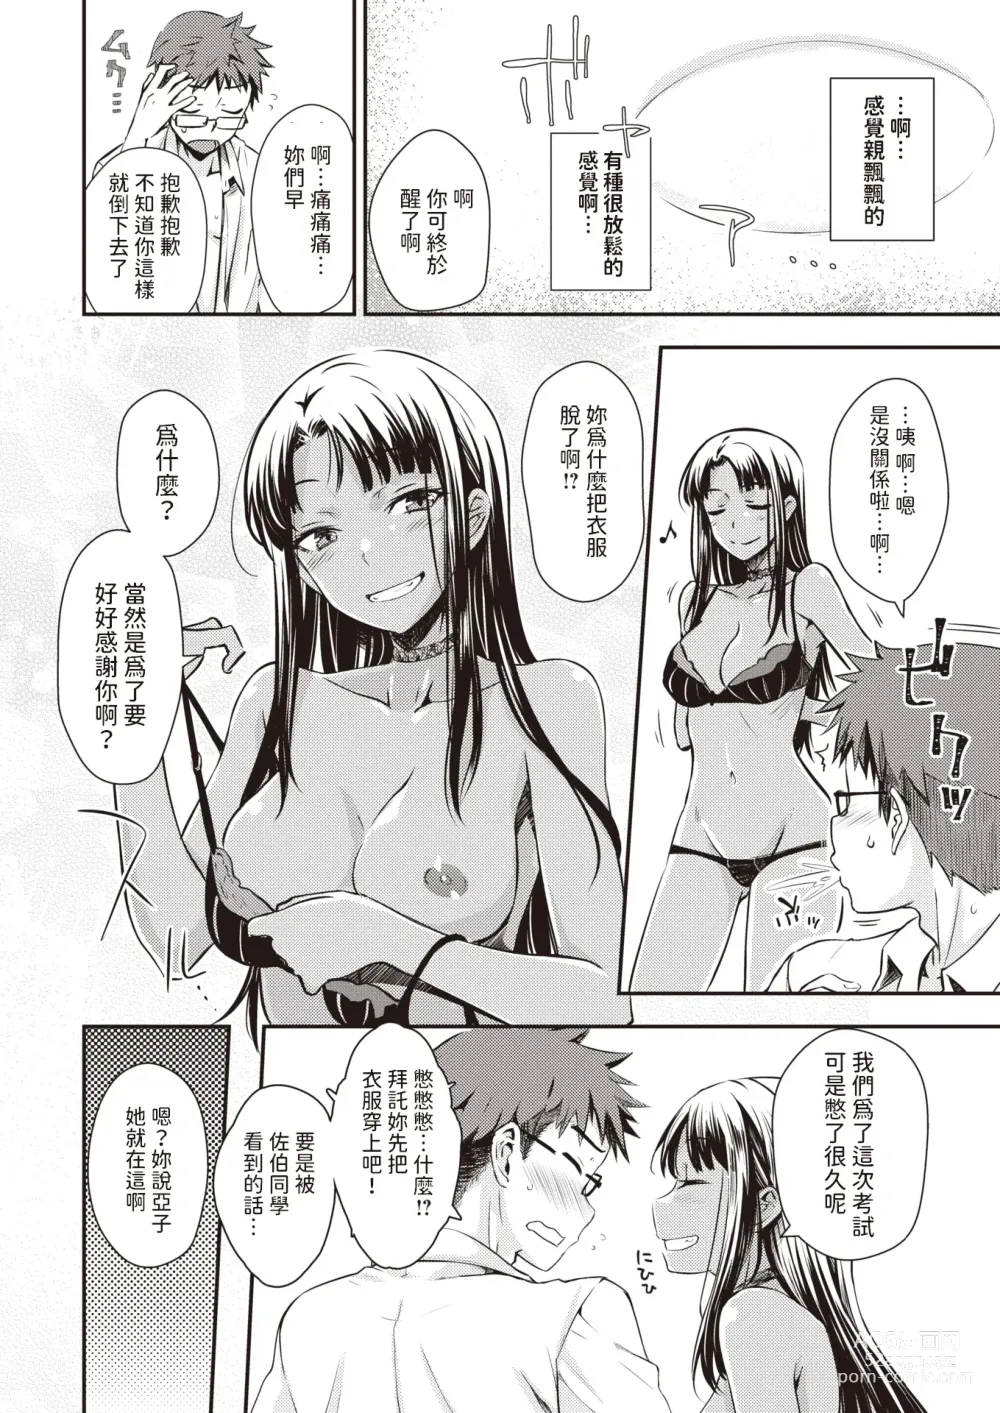 Page 6 of manga Oshiete Ageru